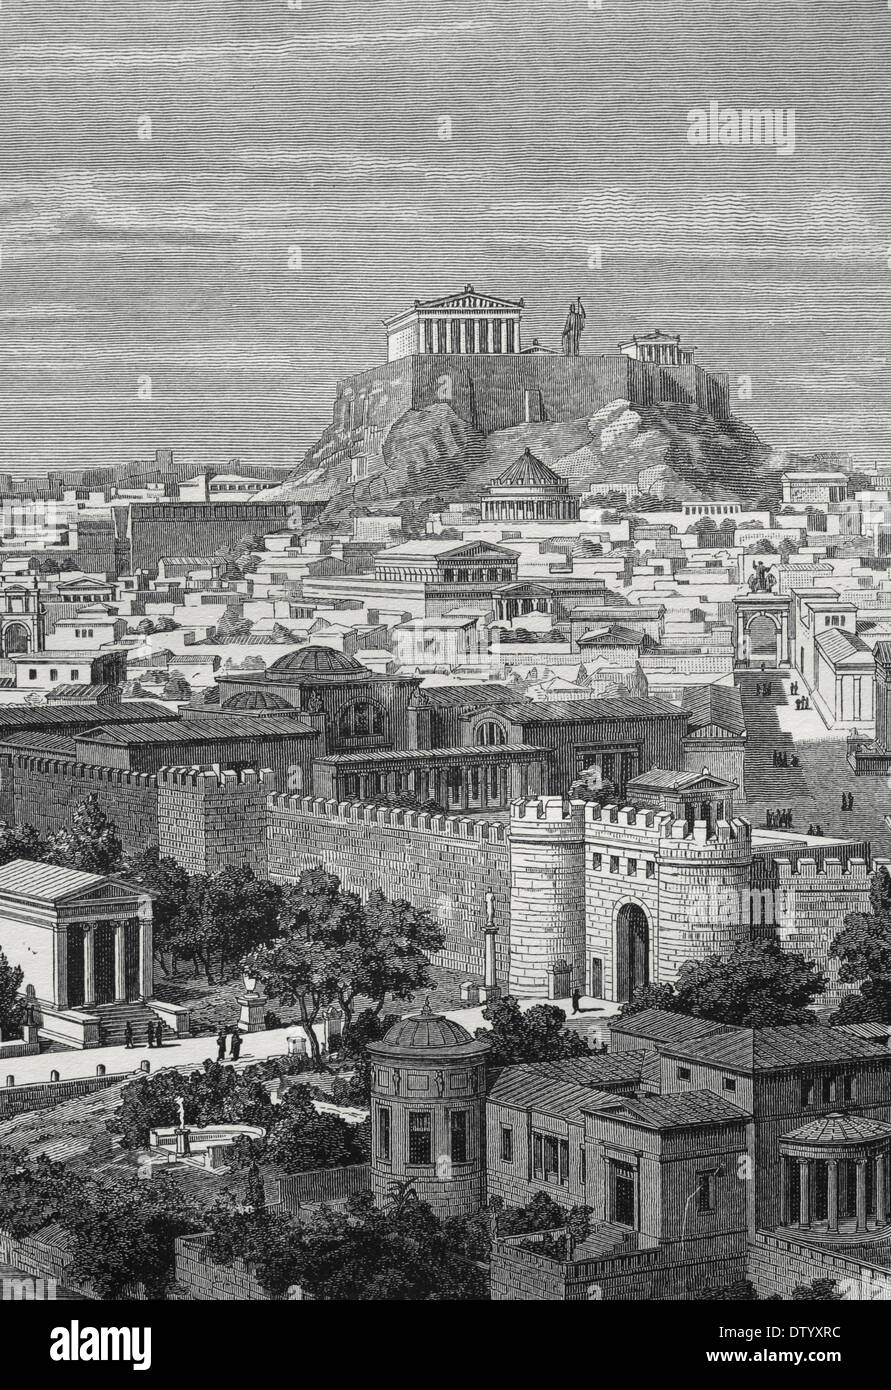 Grecia. Atenas. En el siglo I AC. Ciudad del Este, en el tiempo de Adriano. Grabado por J. Buhlmann, 1886. Foto de stock